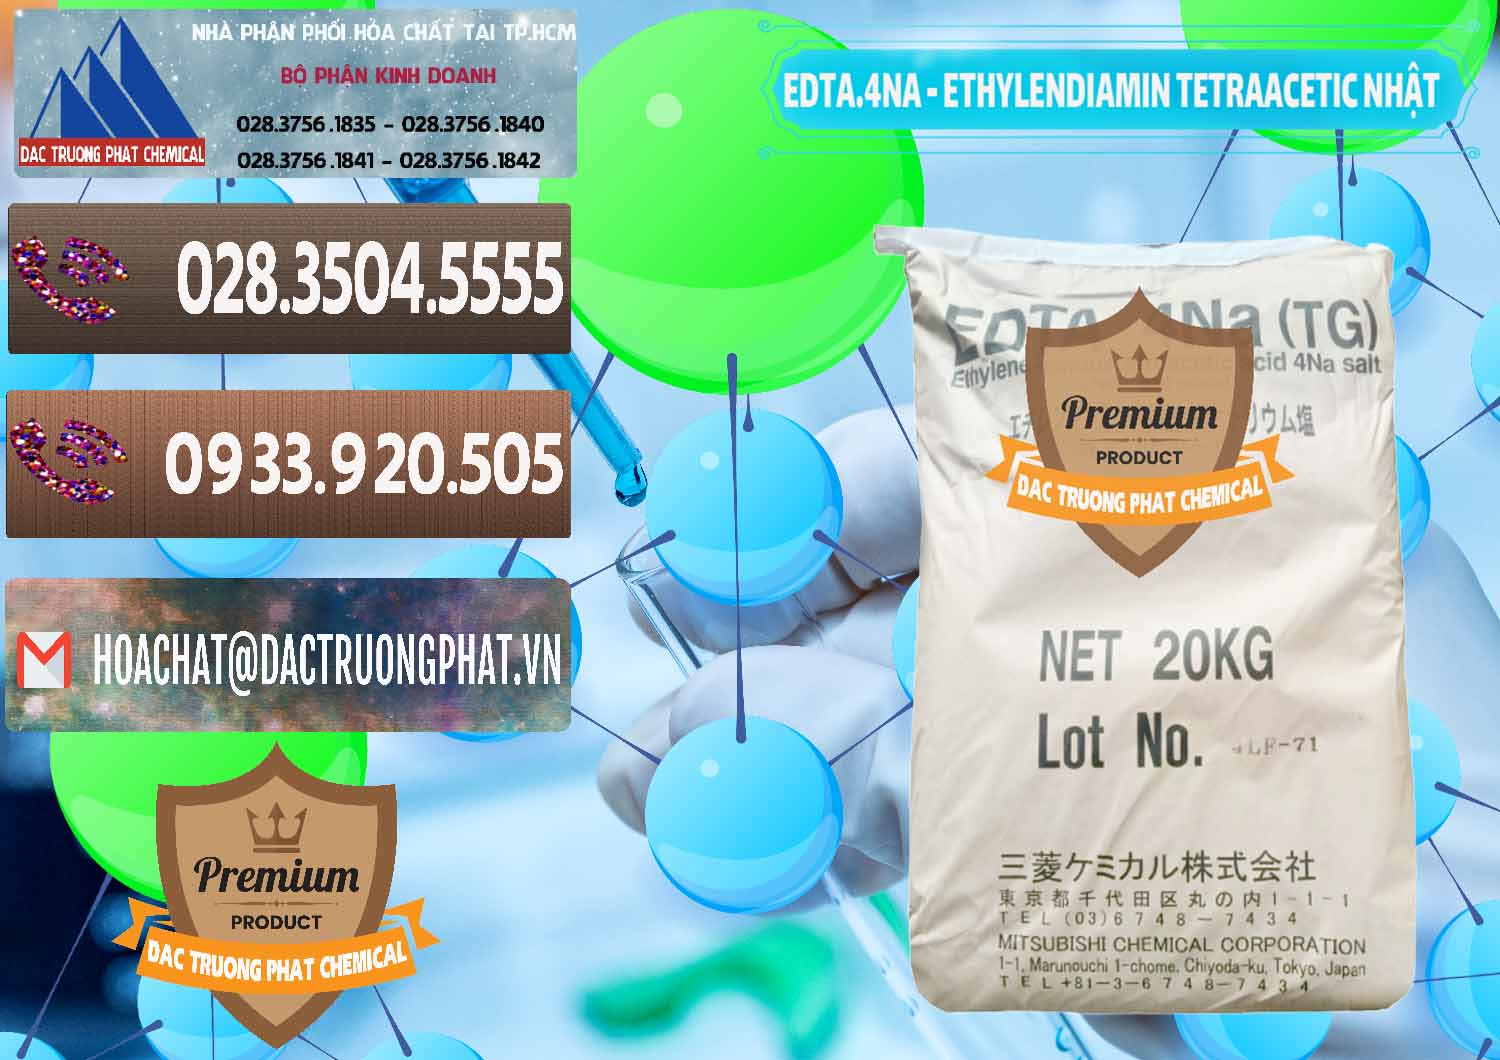 Công ty chuyên cung ứng và bán EDTA 4Na - Ethylendiamin Tetraacetic Nhật Bản Japan - 0482 - Cty chuyên kinh doanh & cung cấp hóa chất tại TP.HCM - hoachatviet.net